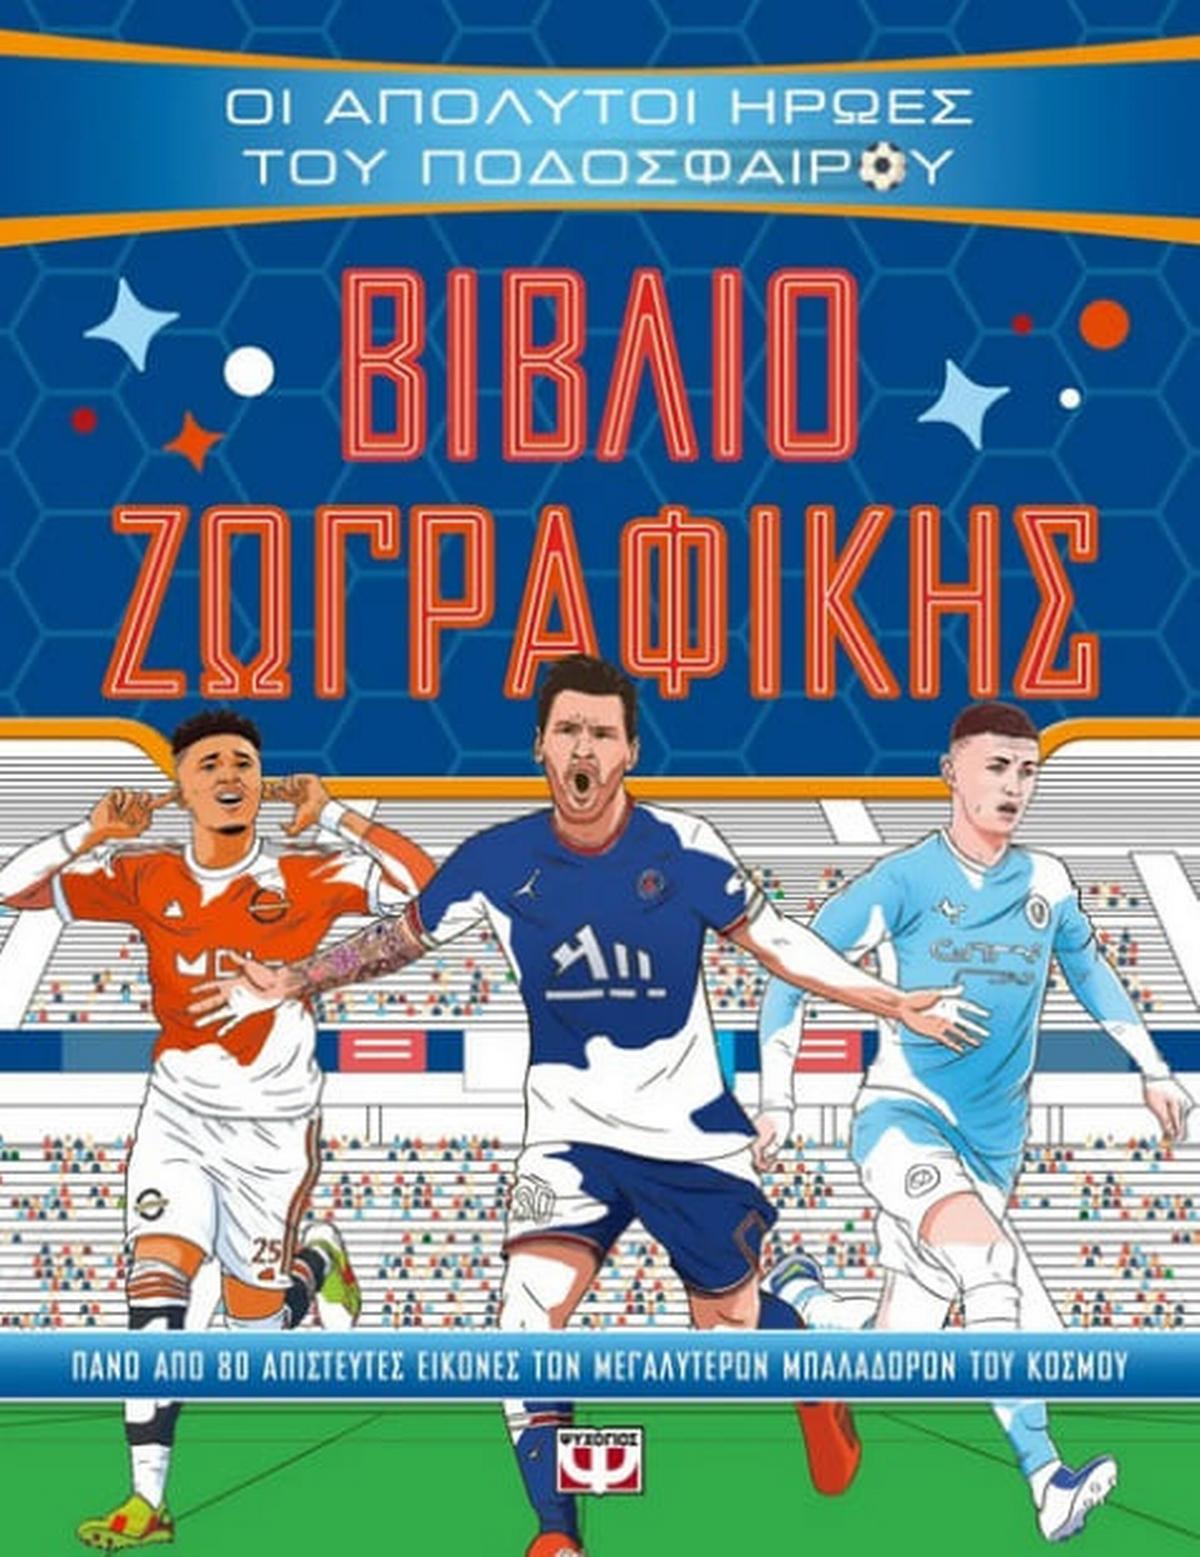 Οι απόλυτοι ήρωες του ποδοσφαίρου: Βιβλίο ζωγραφικής